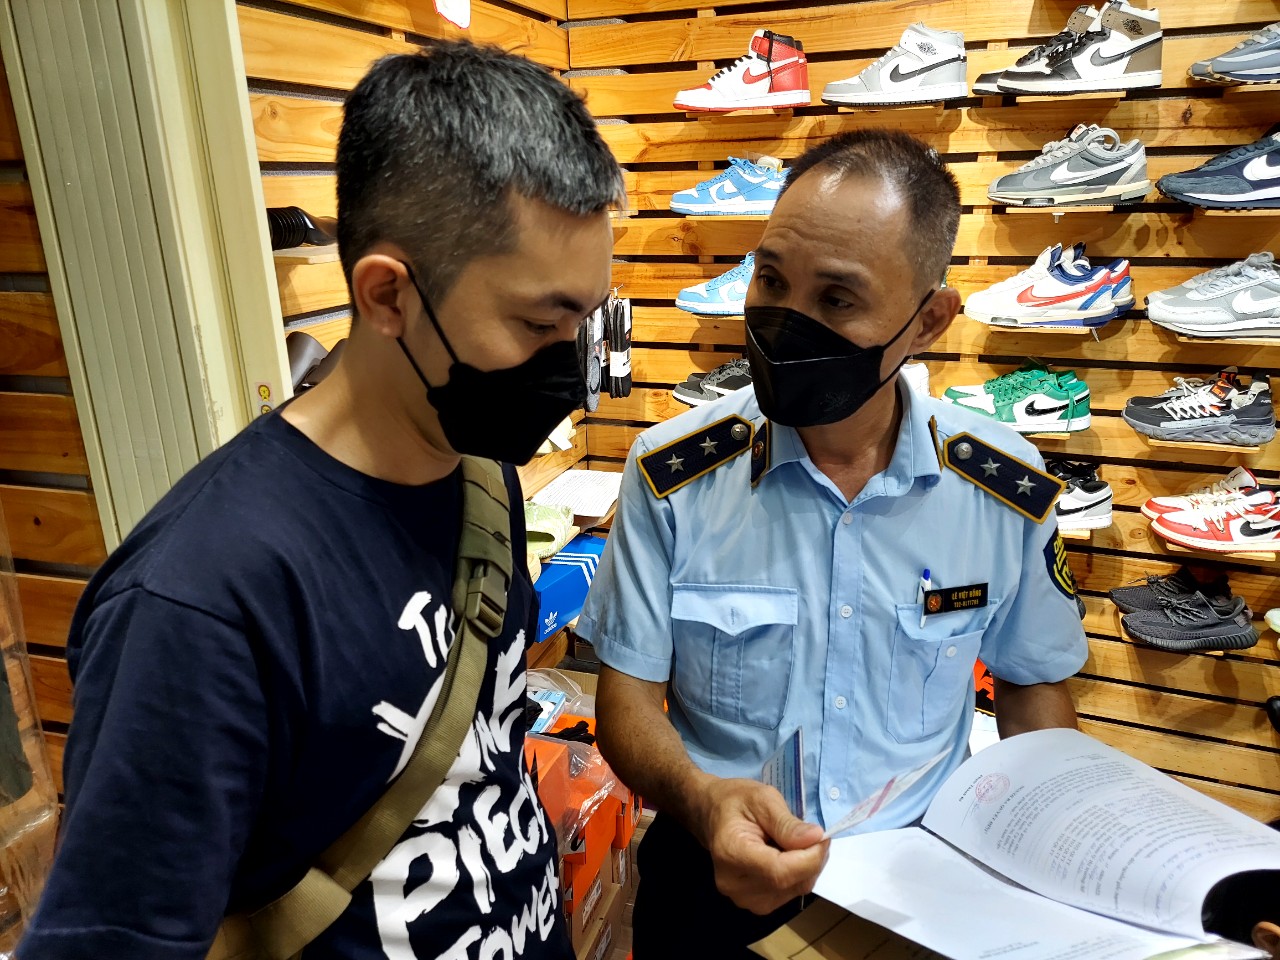 Lực lượng QLTT kiểm tra đột xuất 6 điểm kinh doanh tại Sài Gòn Square, thu giữ hàng ngàn sản phẩm nhái, giả - Ảnh Tổng Cục QLTT.